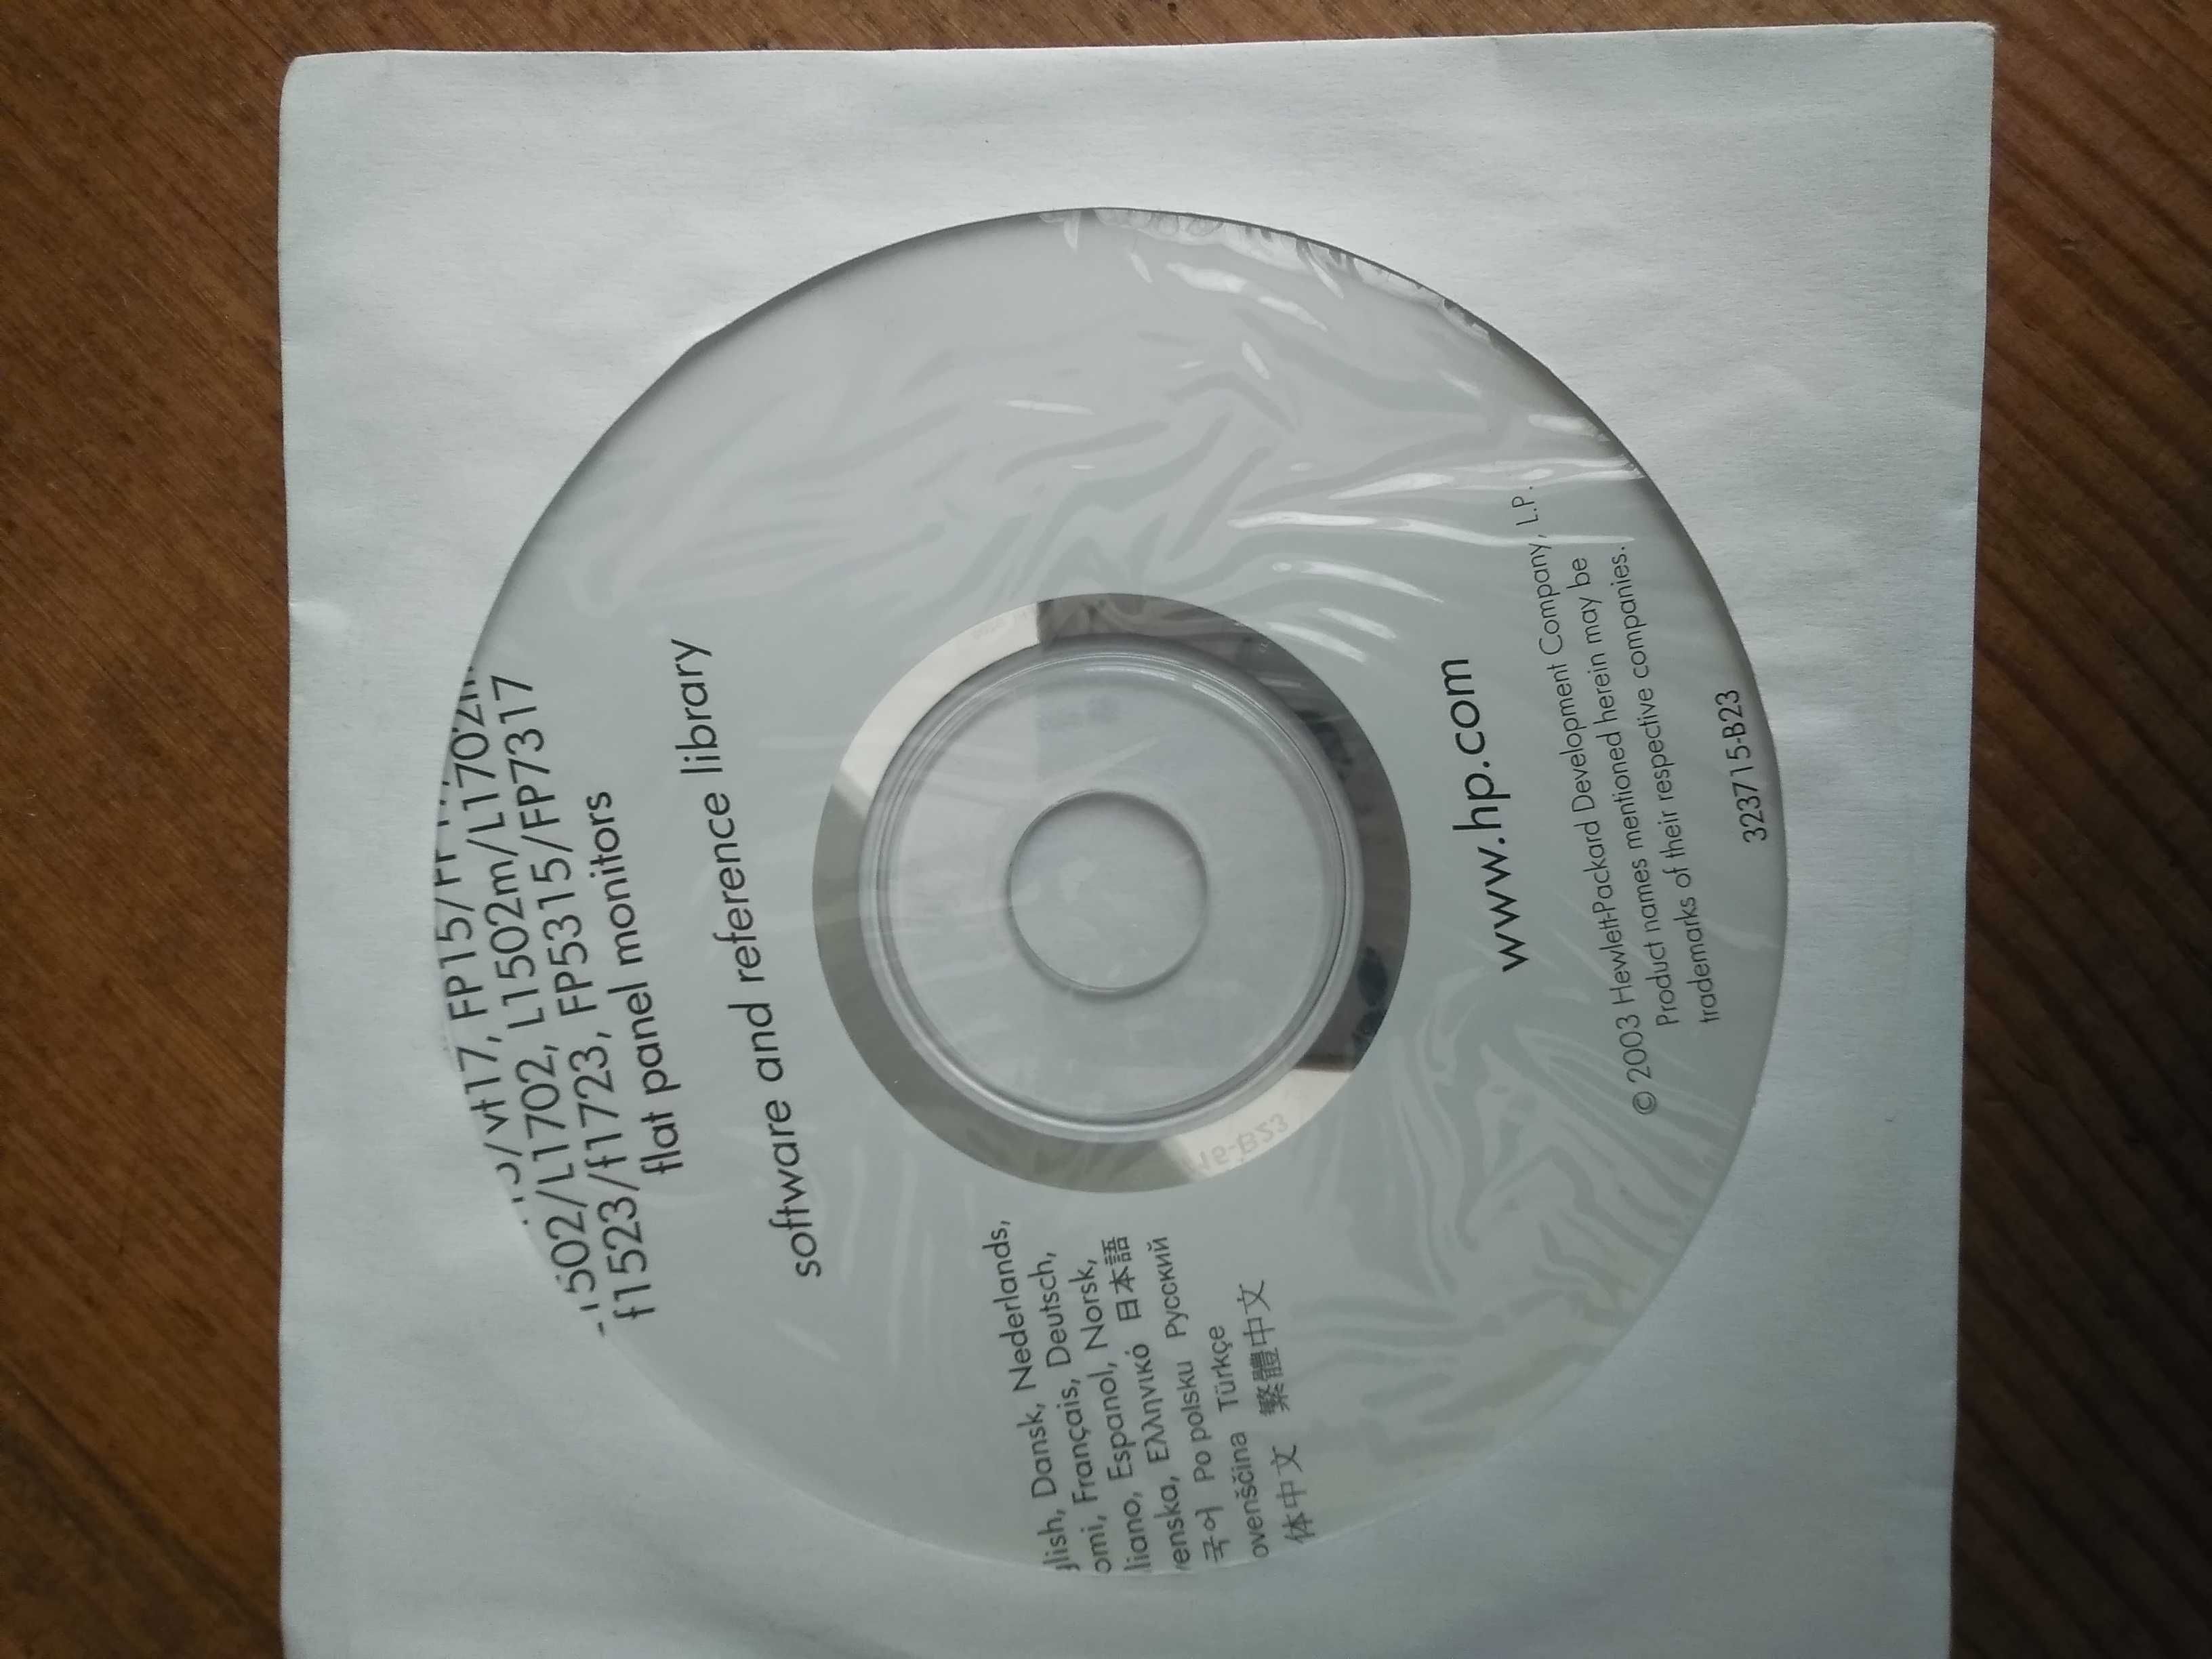 Compaq Restore CD - 10 лв. за бр.